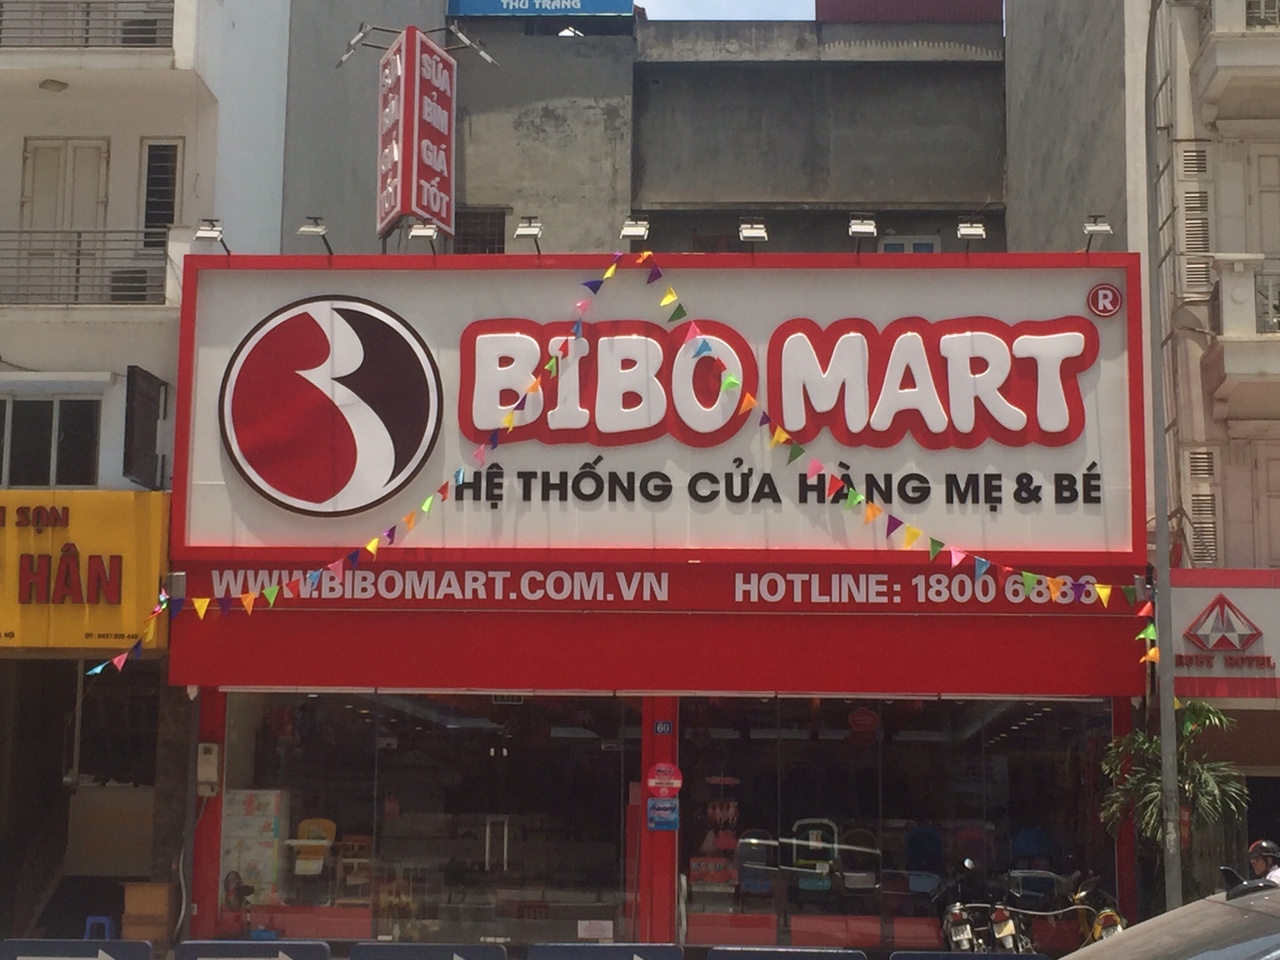 Làm biển hiệu quảng cáo y tín giá rẻ tại Hà Nội